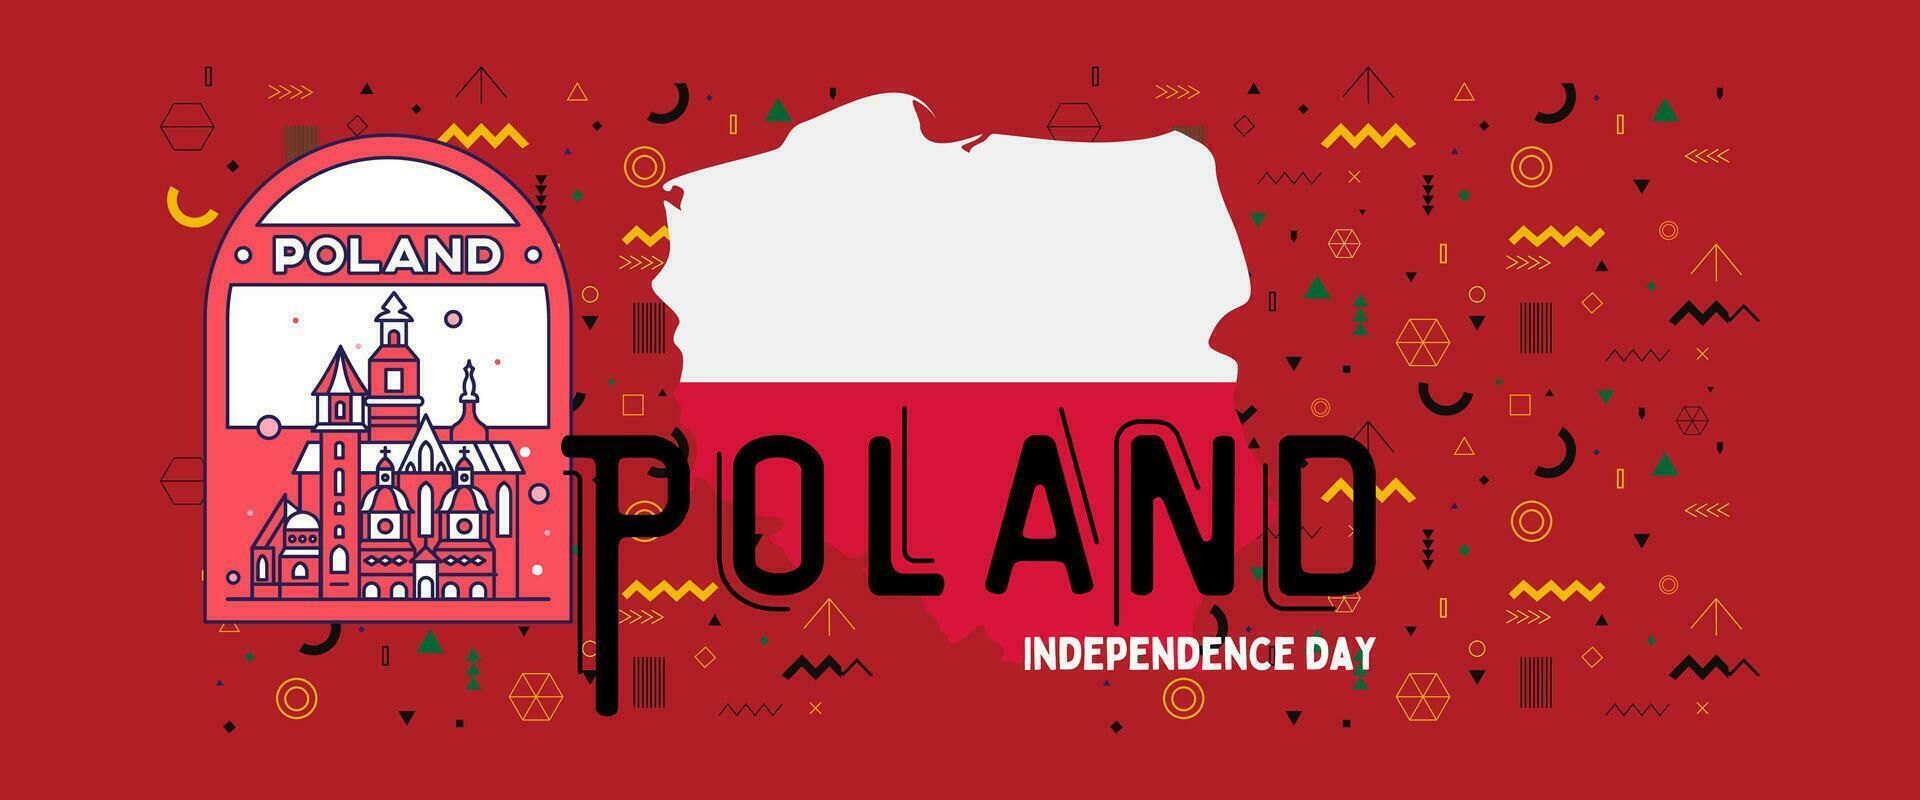 Polen nationaal dag banier voor onafhankelijkheid dag verjaardag. vlag van Polen en modern meetkundig retro abstract ontwerp. rood en wit concept. vector